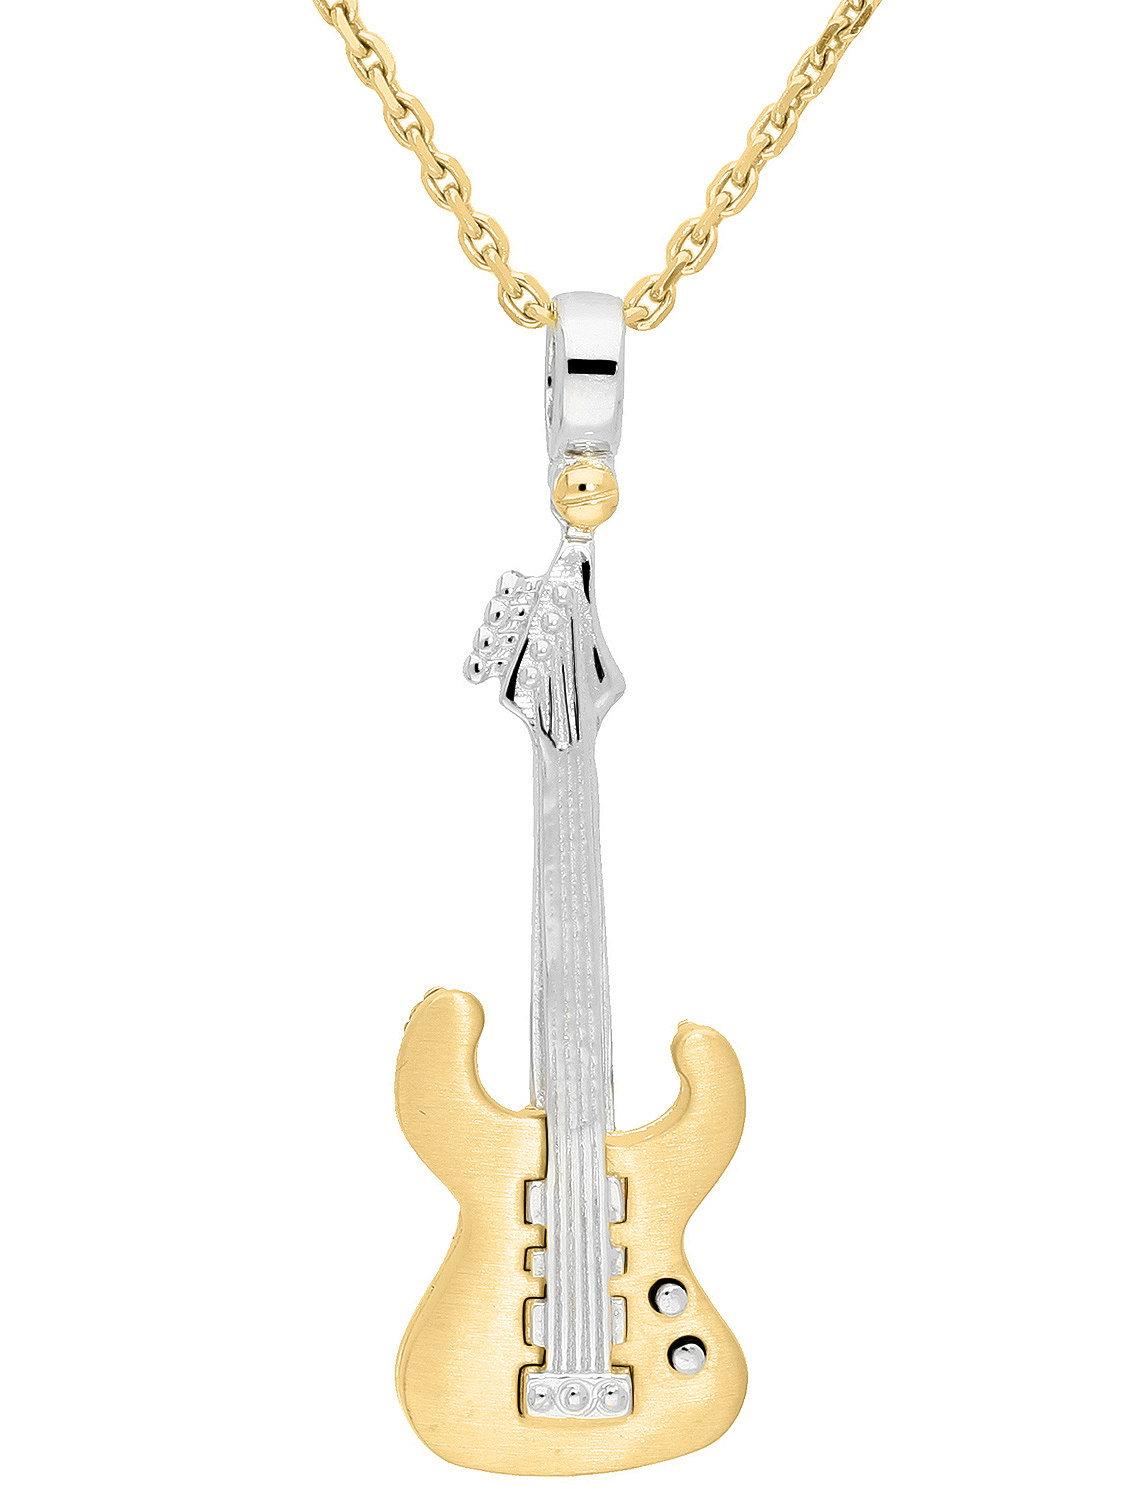 Motivanhänger Gitarre in Weiß- und Gelbgold mit Kette